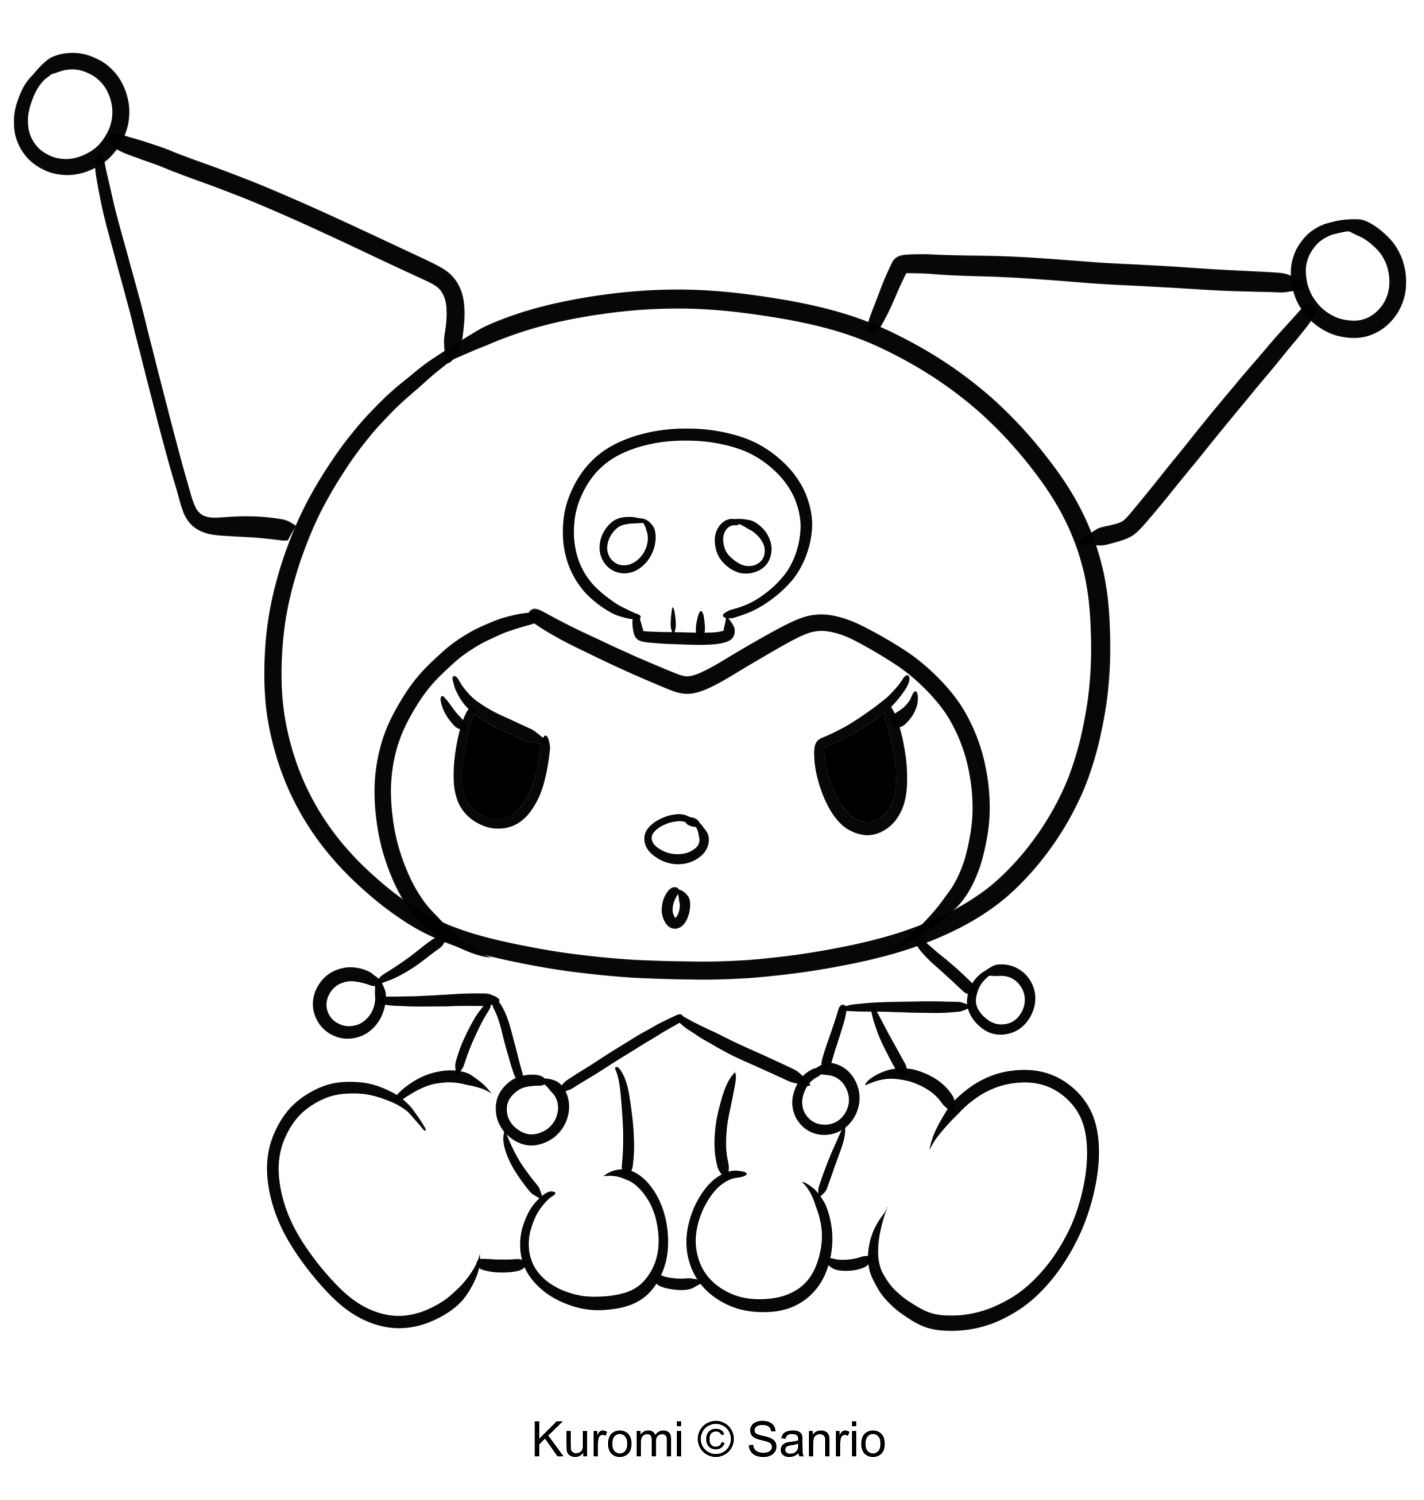 Páxina para colorear Kuromi 18 de My Melody para imprimir e colorear